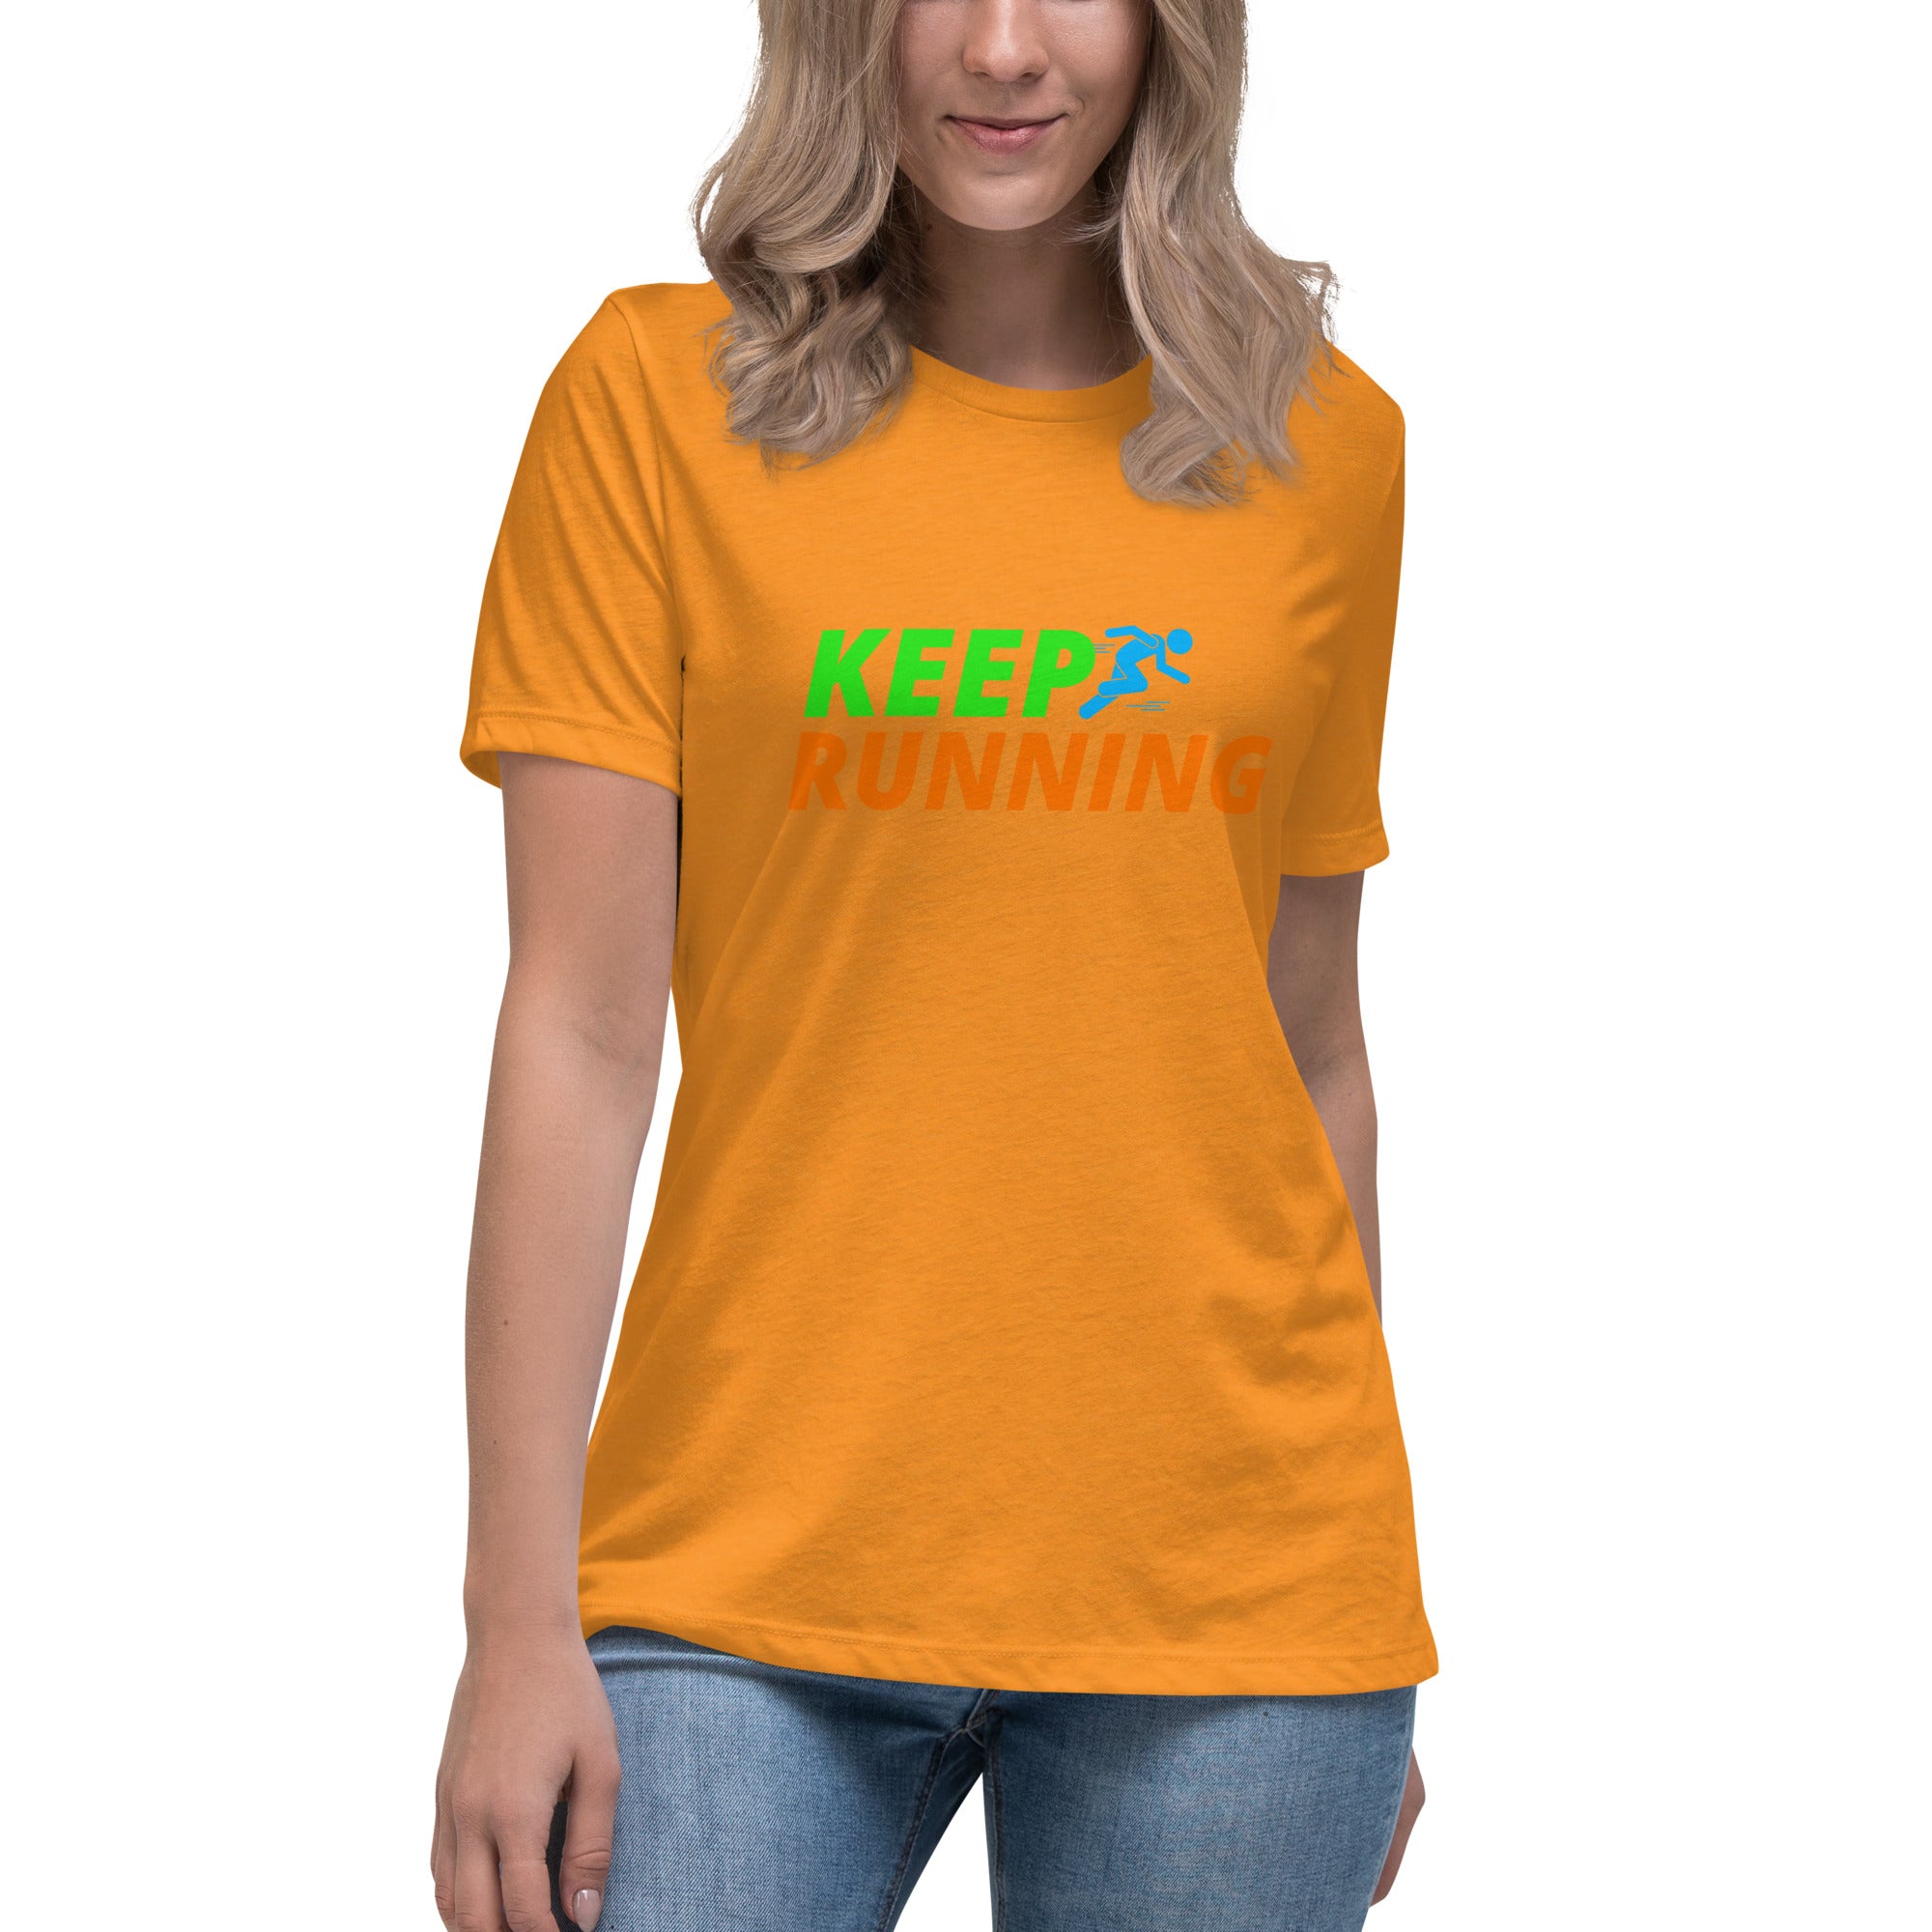 Keep Running Women's Premium T-Shirt